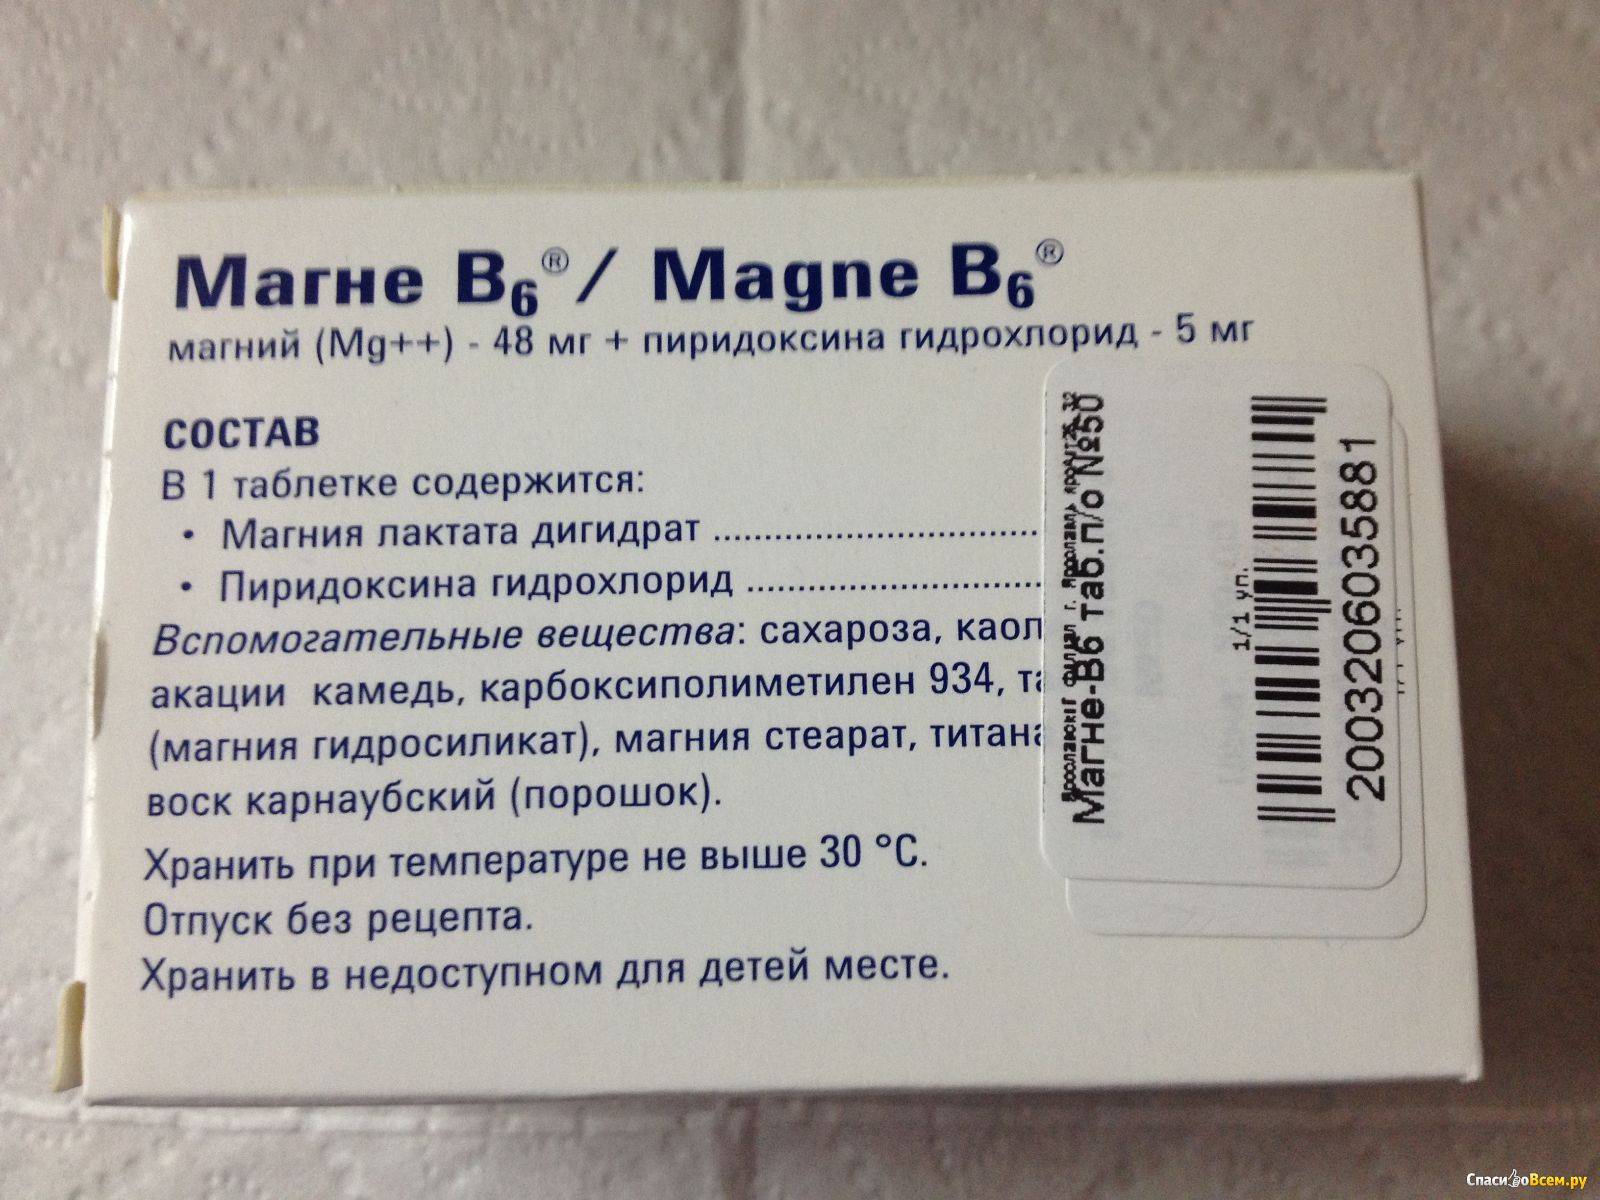 Магнелис в6 в санкт-петербурге - инструкция по применению, описание, отзывы пациентов и врачей, аналоги